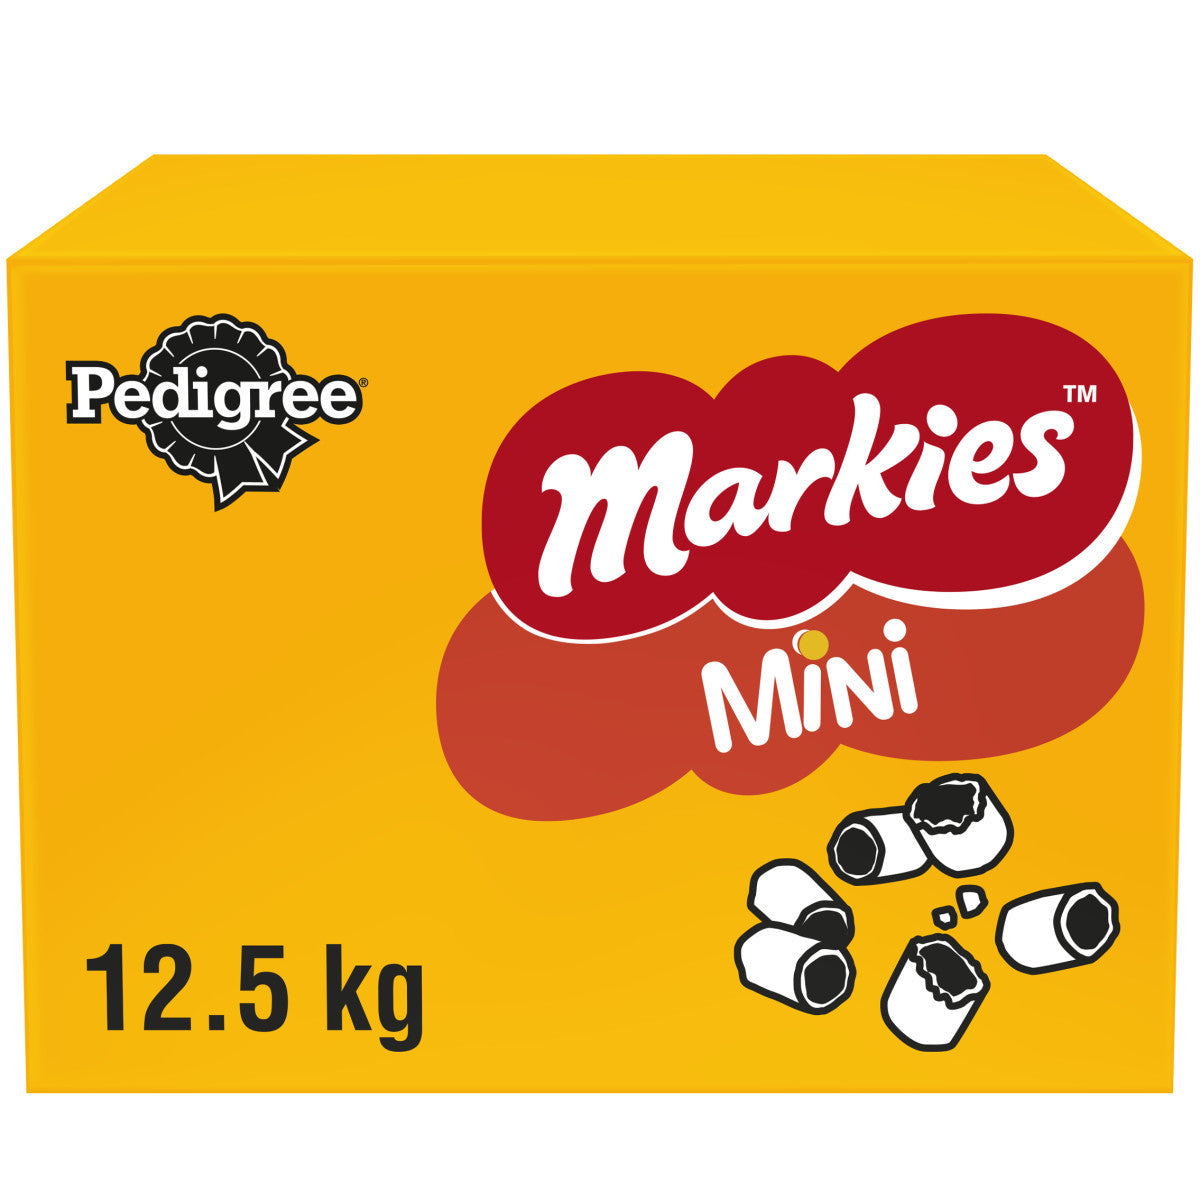 Pedigree Markies Mini Dog Treats